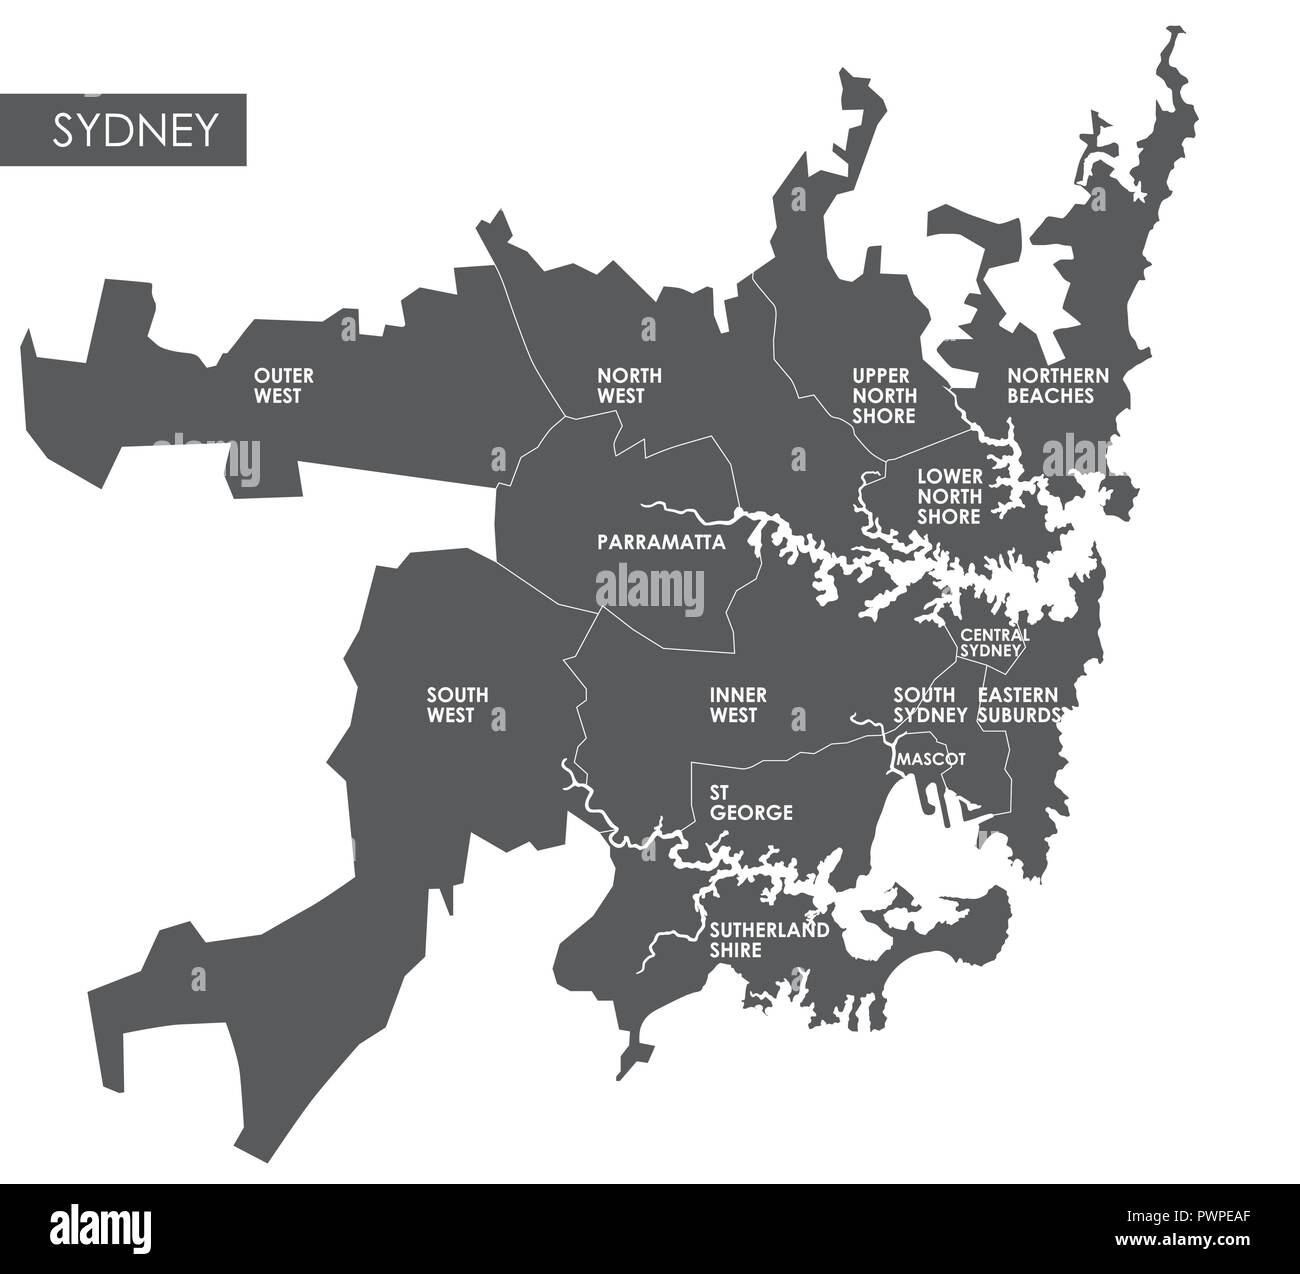 Mapa de vectores del distrito de Sydney el plan detallado de la ciudad, distritos y barrios Ilustración del Vector